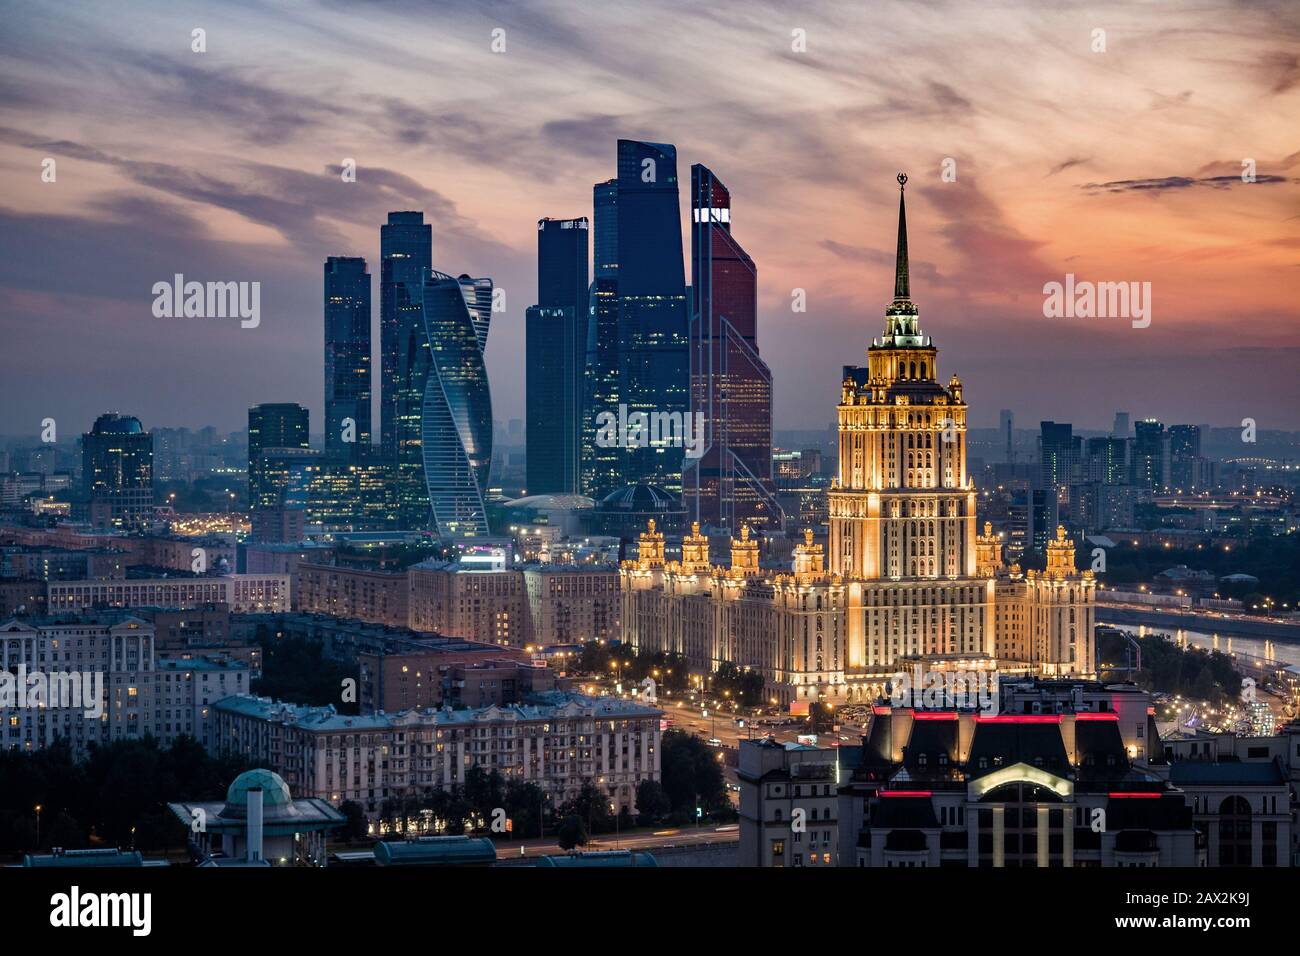 Vue aérienne sur la ville de Moscou au coucher du soleil montrant des monuments architecturaux et le centre d'affaires international de Moscou, en Russie. Banque D'Images